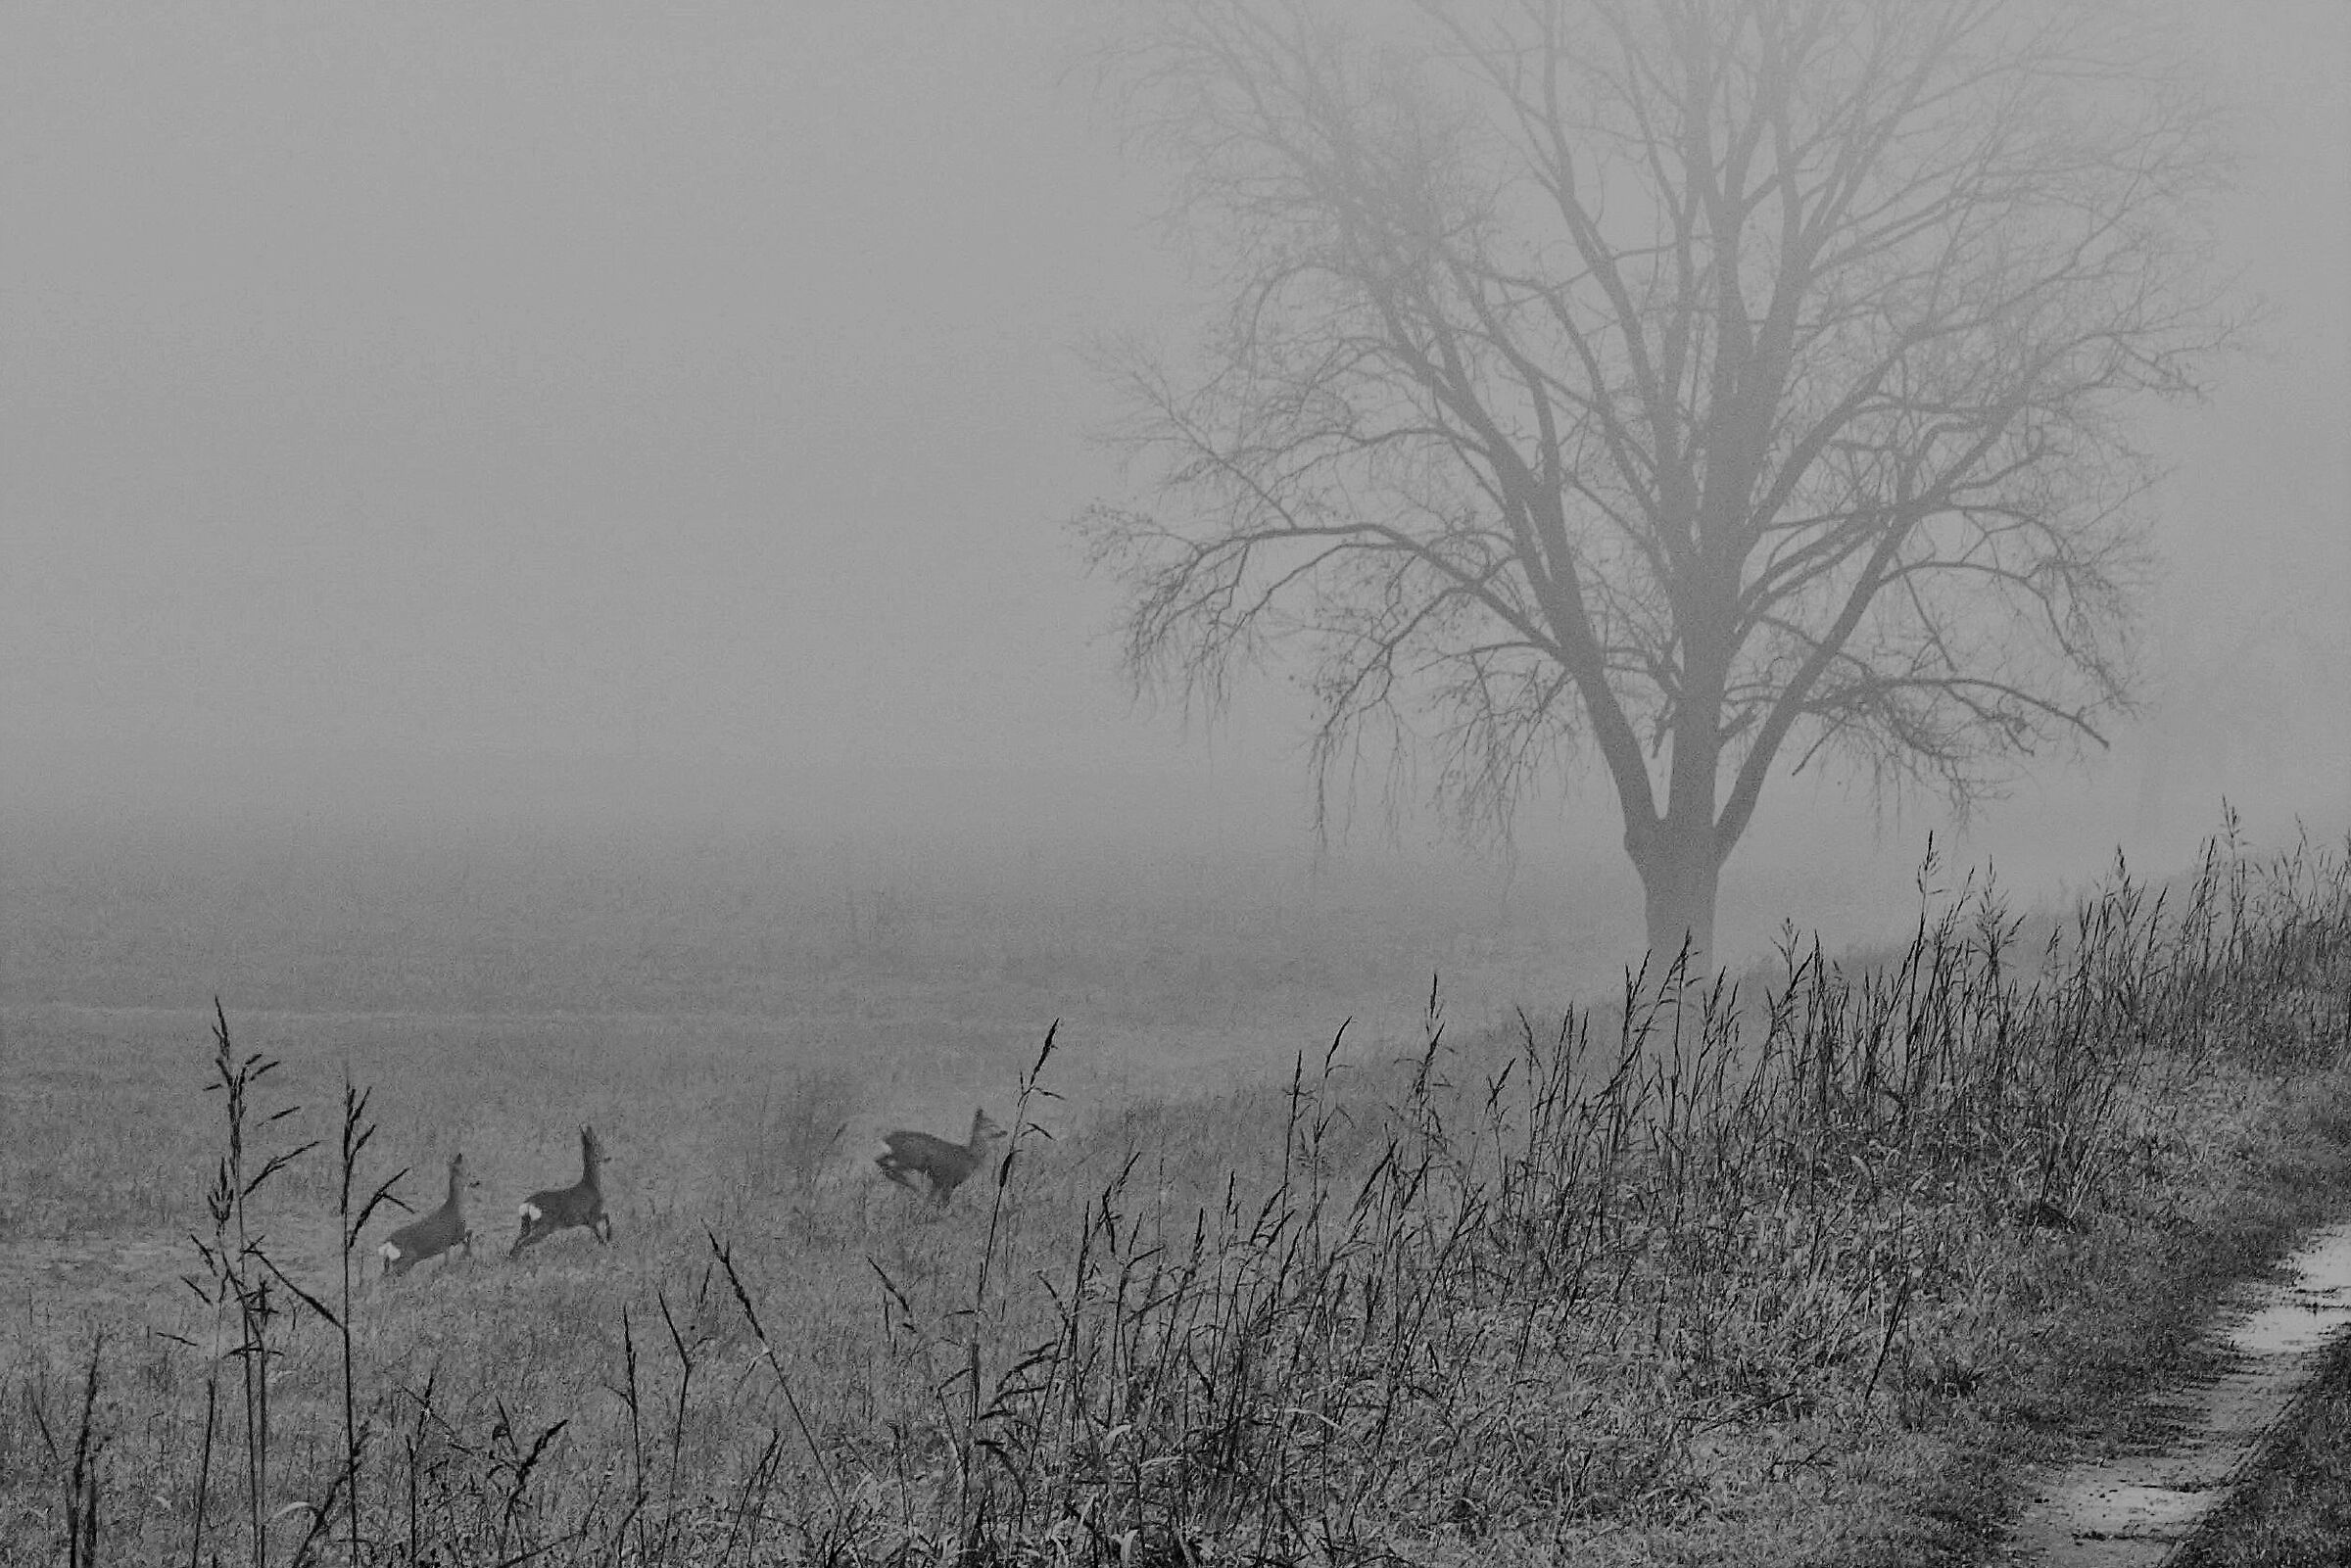 Roe deer in the fog...